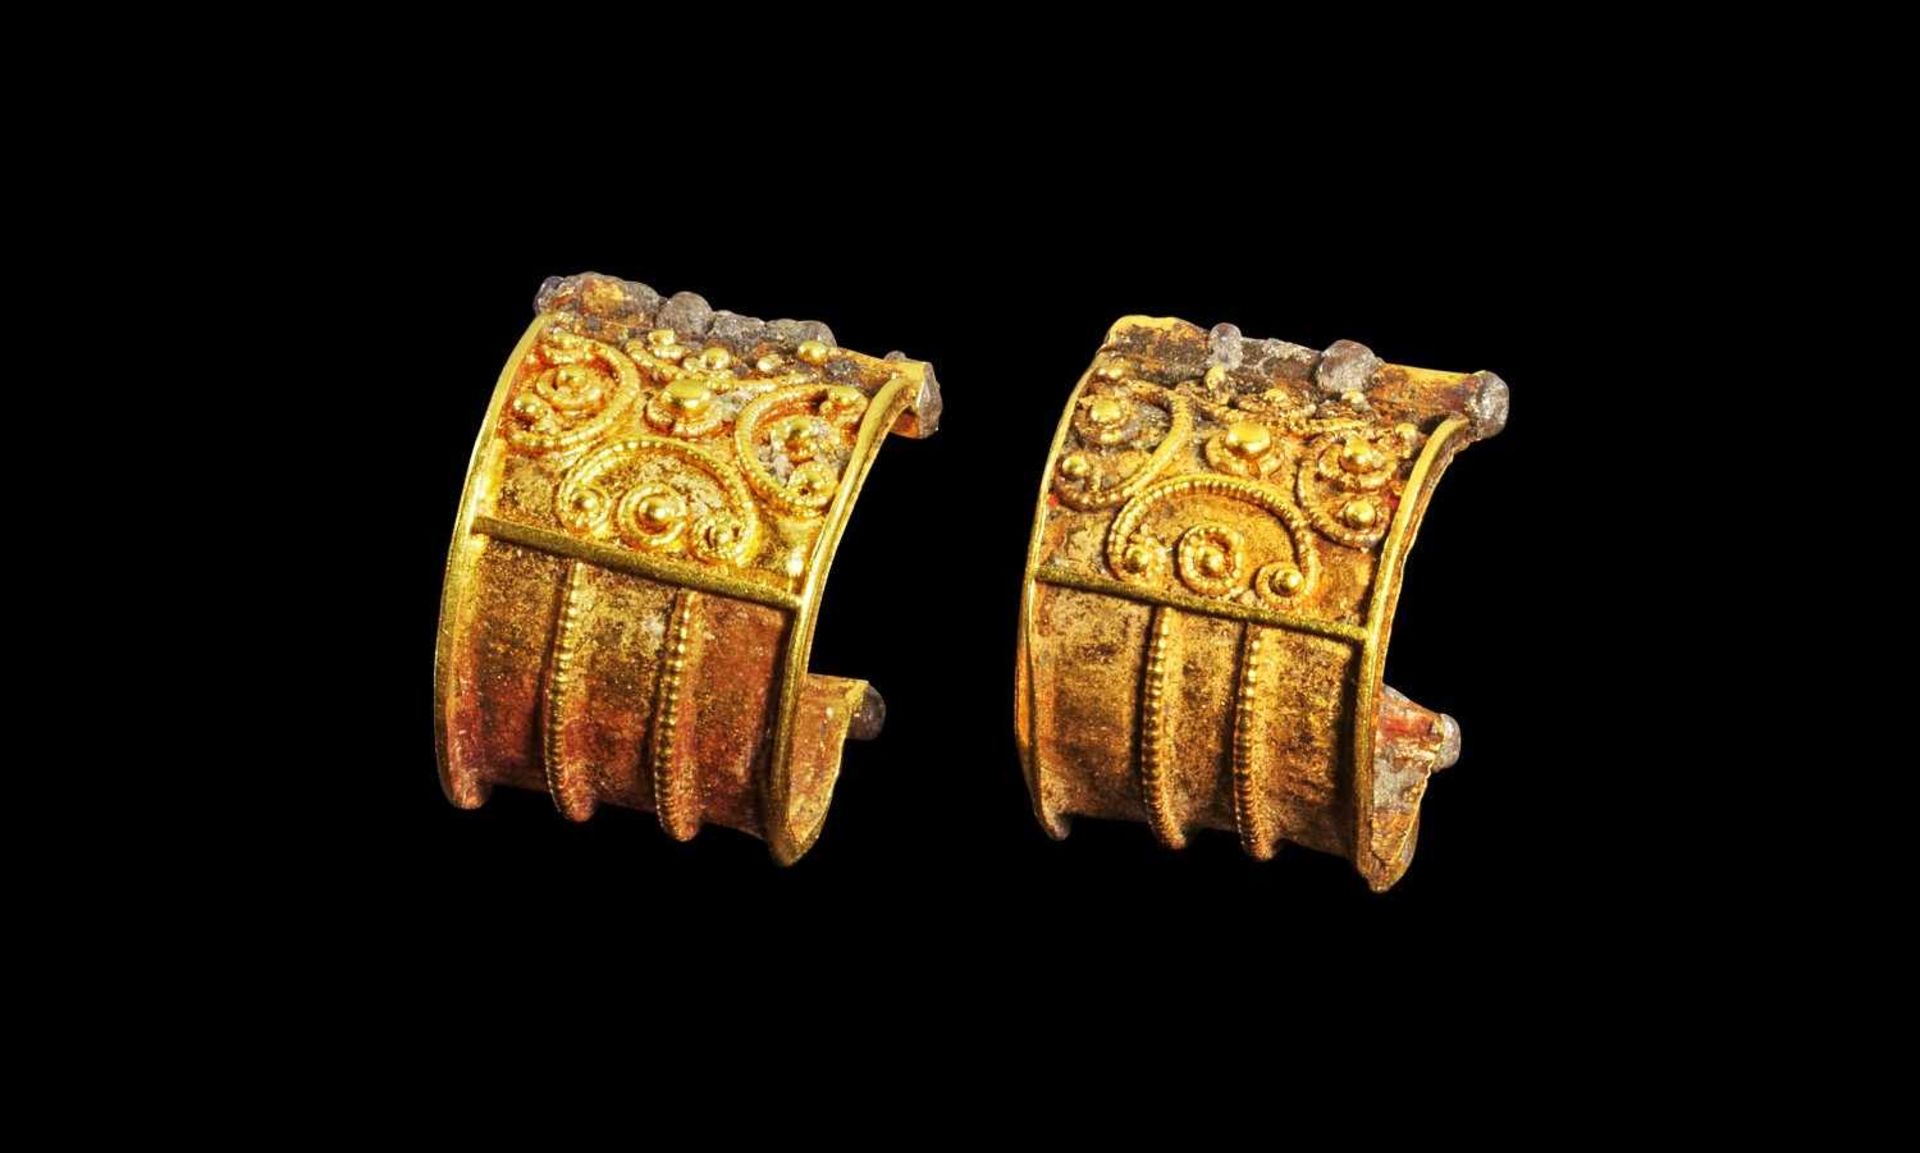 Paar goldene Körbchenohrringe. Etruskisch, 7. Jh. - 5. Jh. v. Chr. 1,45g, ø 1cm. Typ 'Bauletto'. Ein